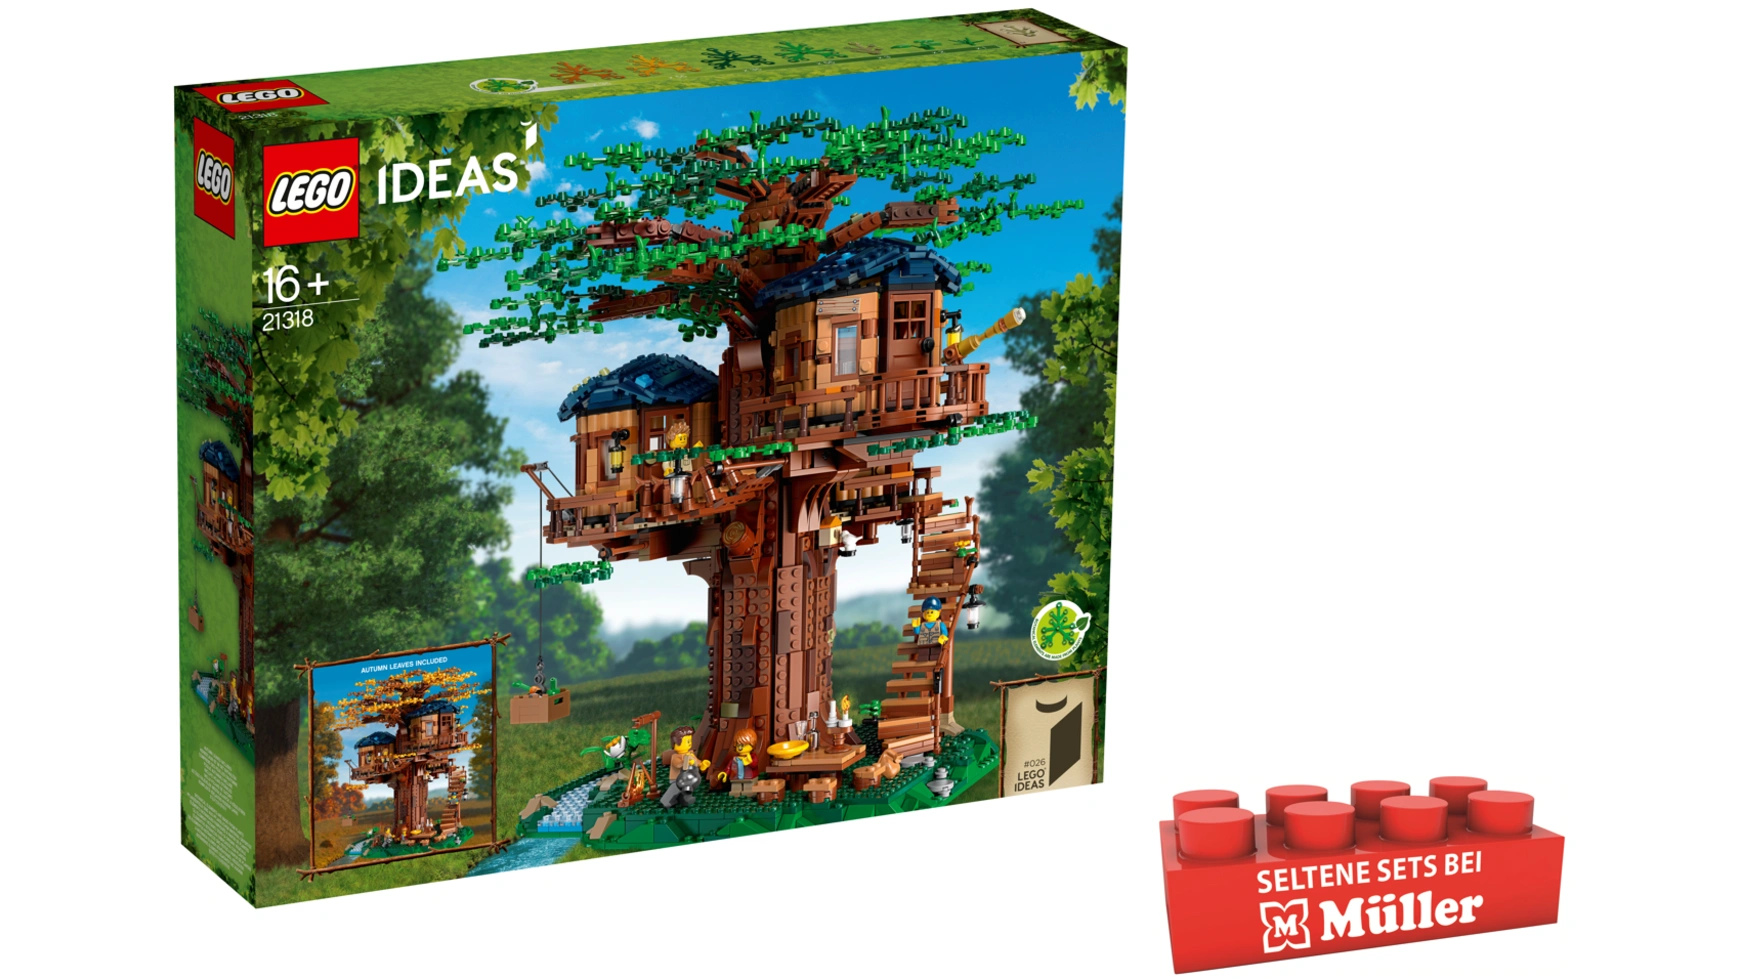 Lego Ideas Набор моделей Дом на дереве с домиками и минифигурками конструктор дом на дереве 21318 lego ideas